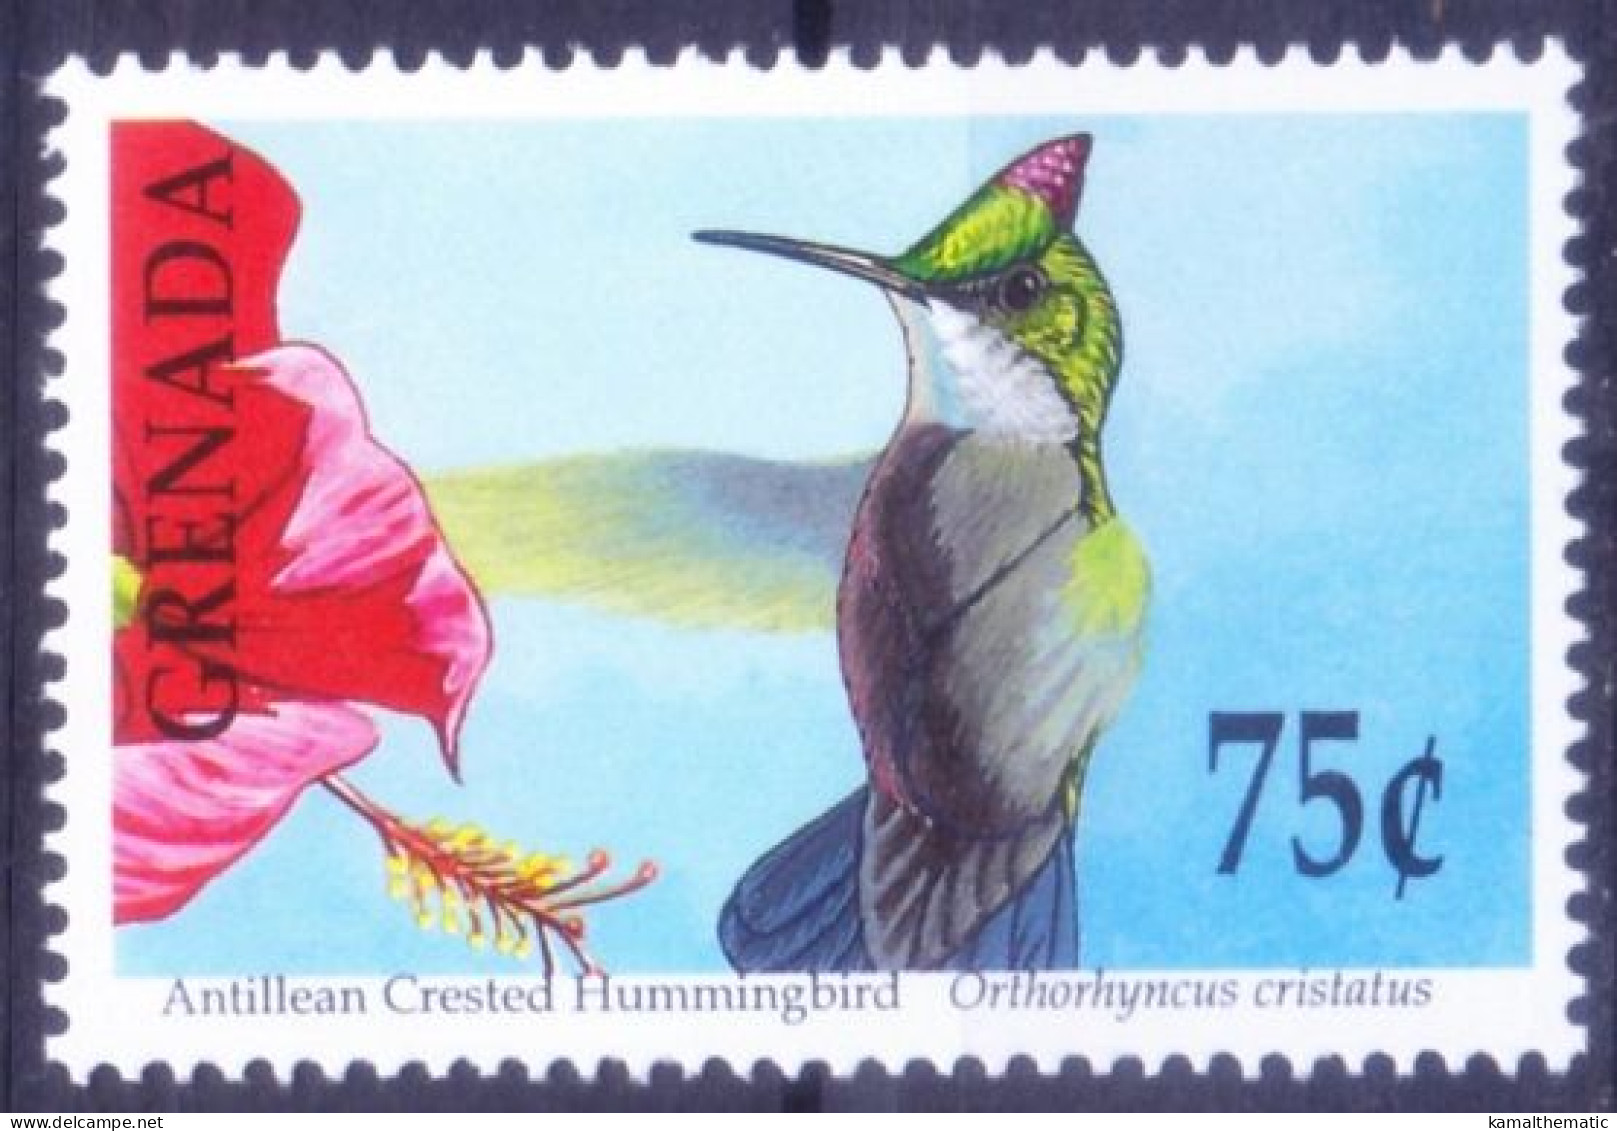 Grenada 1990 MNH, Antillean Crested Hummingbird, Birds - Hummingbirds